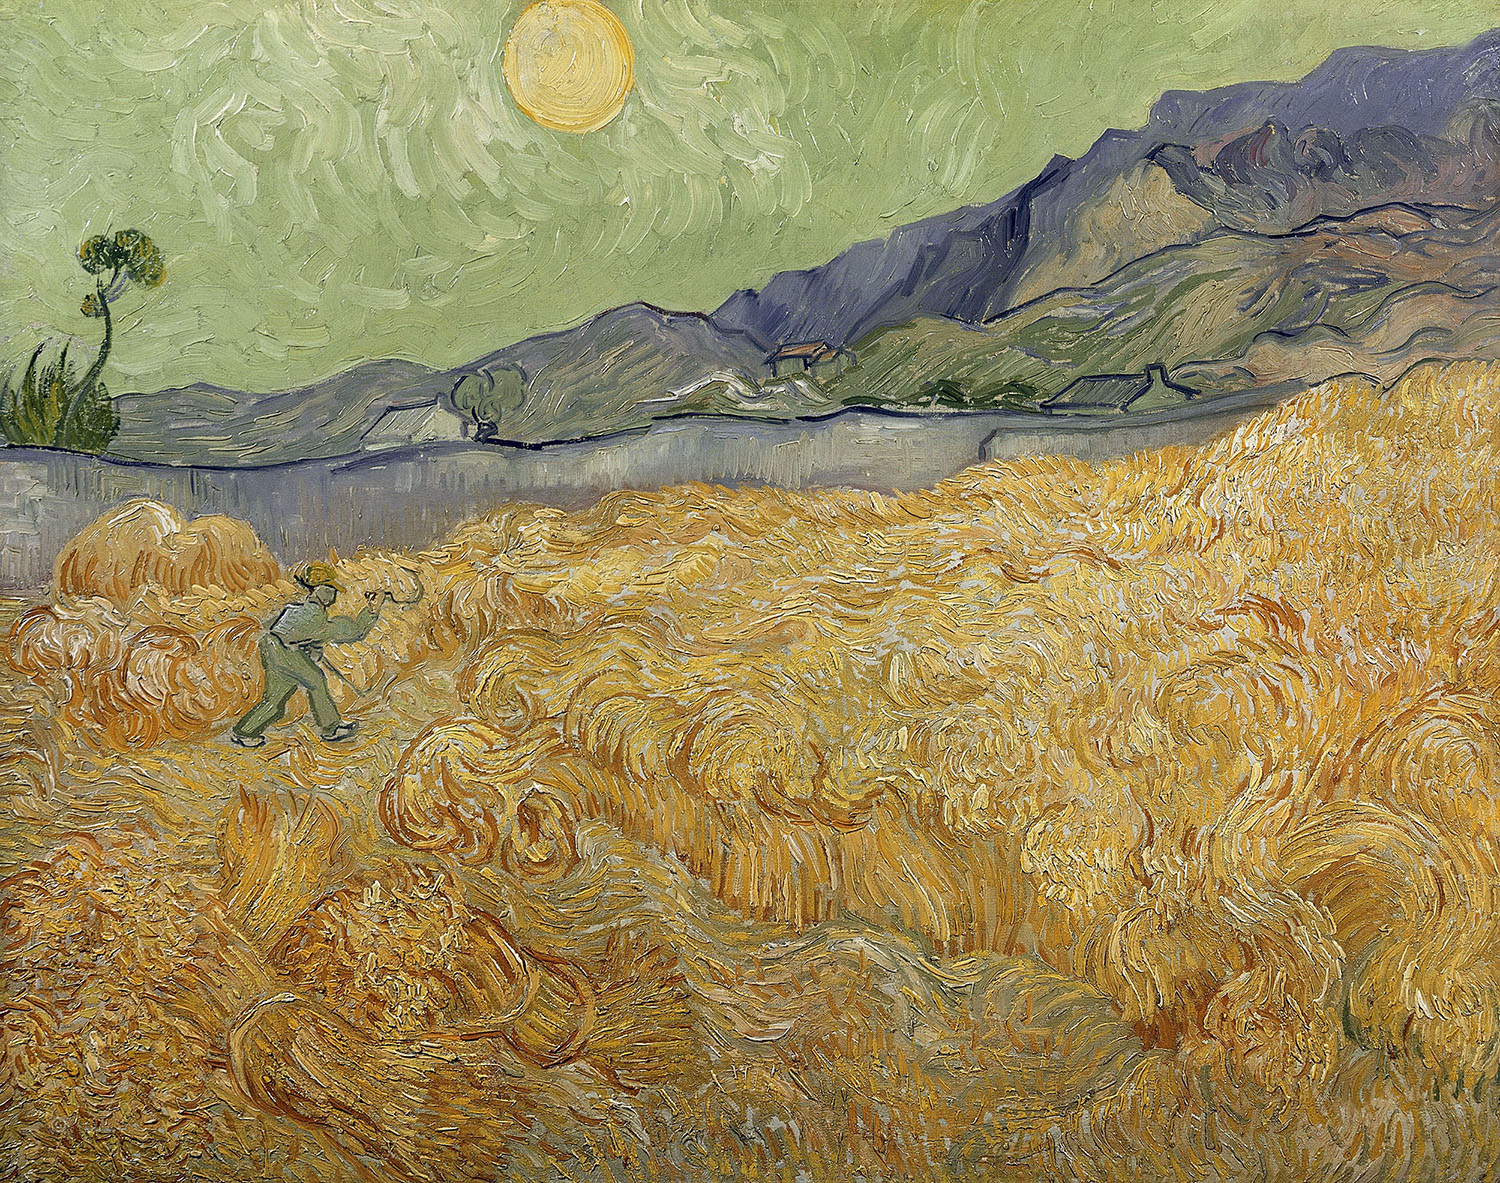 Винсент Ван Гог. "Пшеничное поле со жнецом и восходом солнца". 1889. Музей Ван Гога, Амстердам.